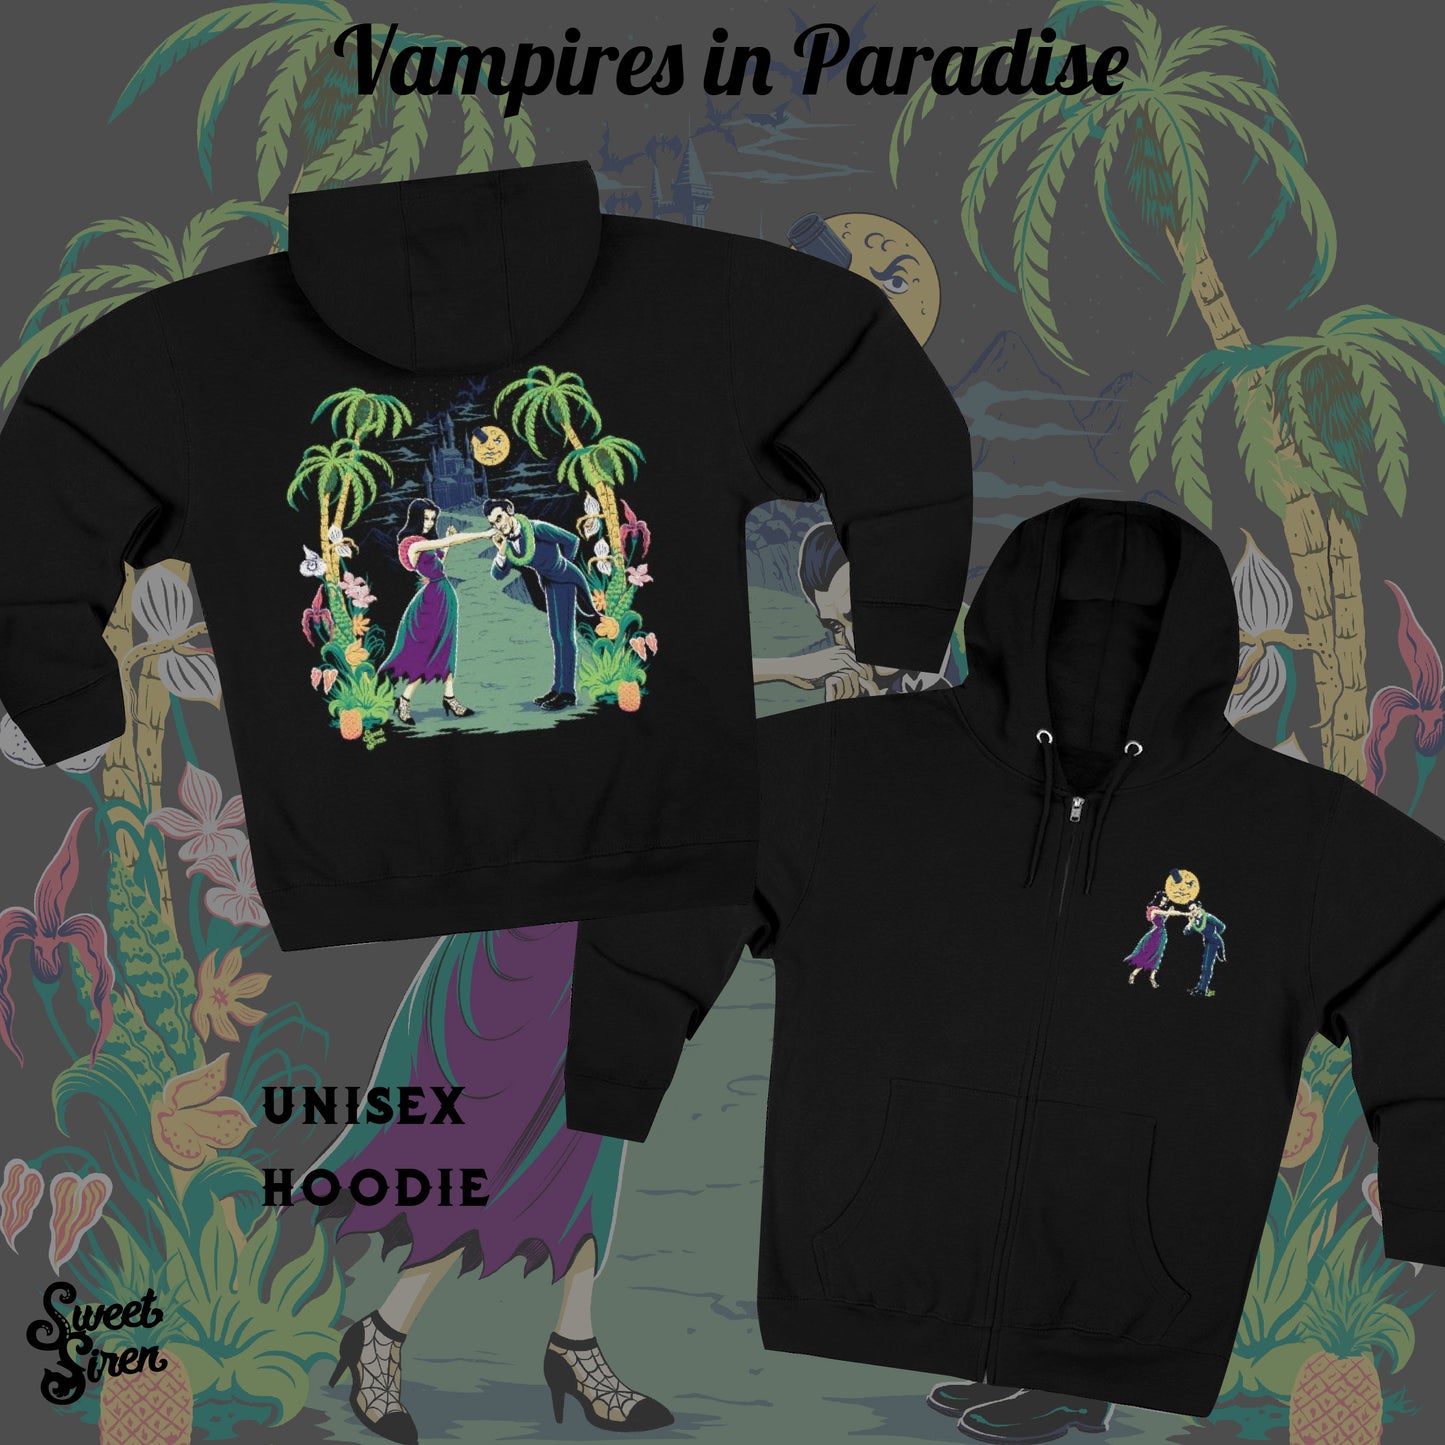 Vampires in Paradise - Unisex Hoodie